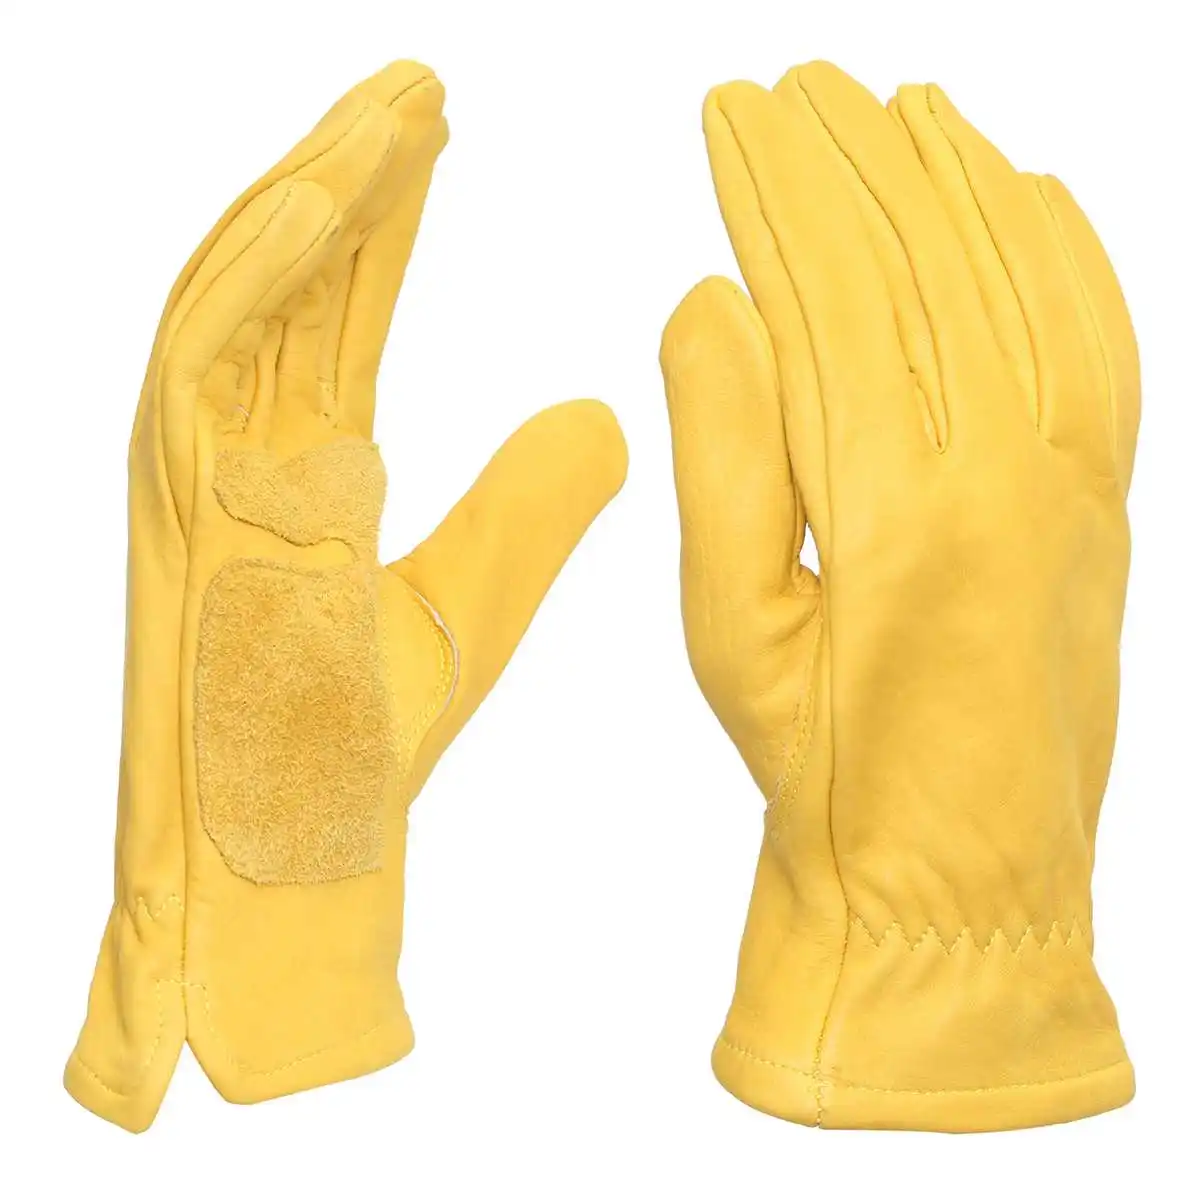 1 пара, винтажные Кожаные Мотоциклетные велосипедные перчатки, желтые универсальные противоскользящие перчатки для скутера, работы, охоты, полный палец, перчатки M, L, XL, XXL